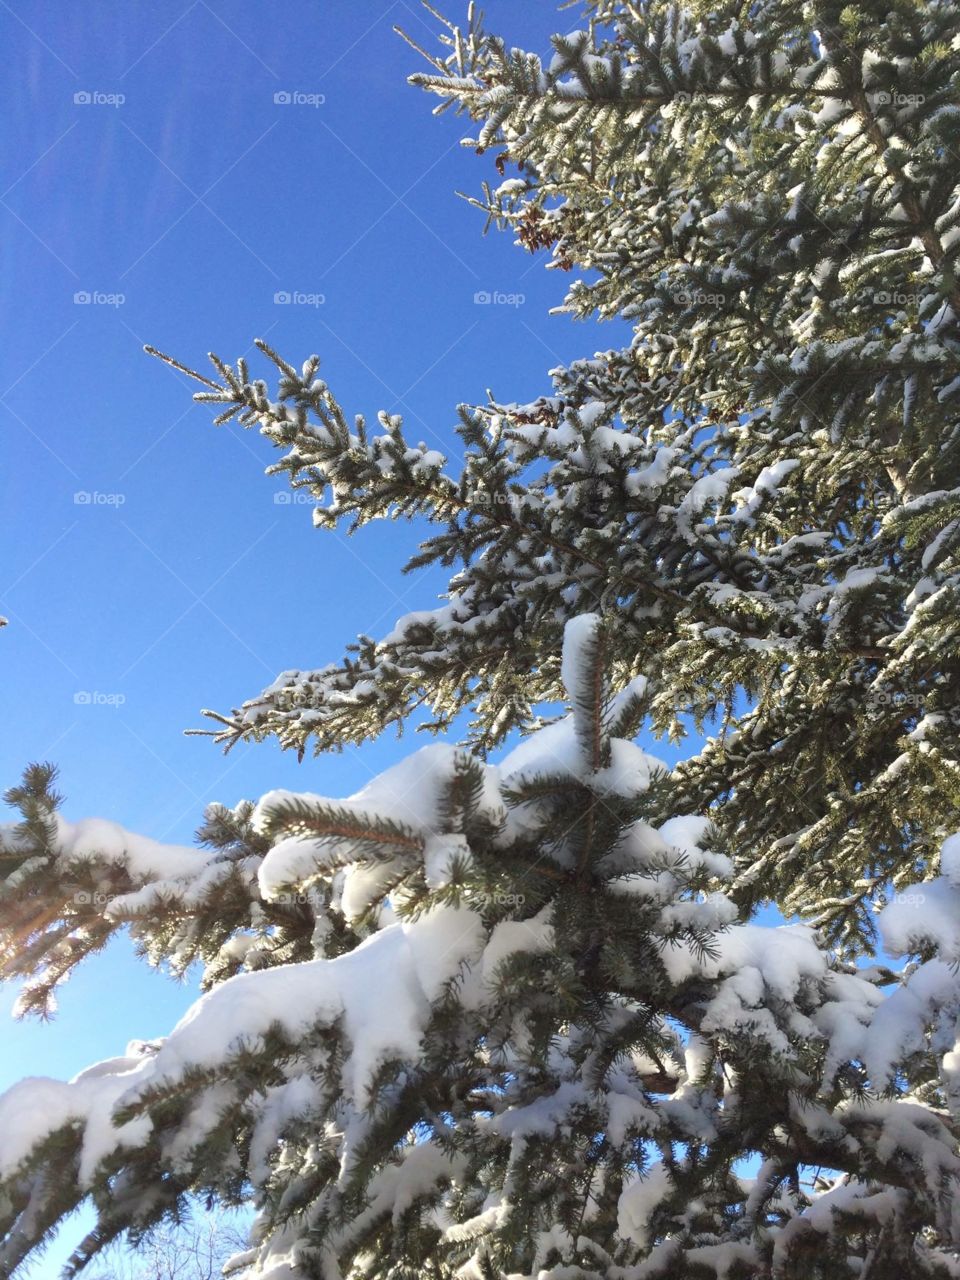 Tree, snow and sky